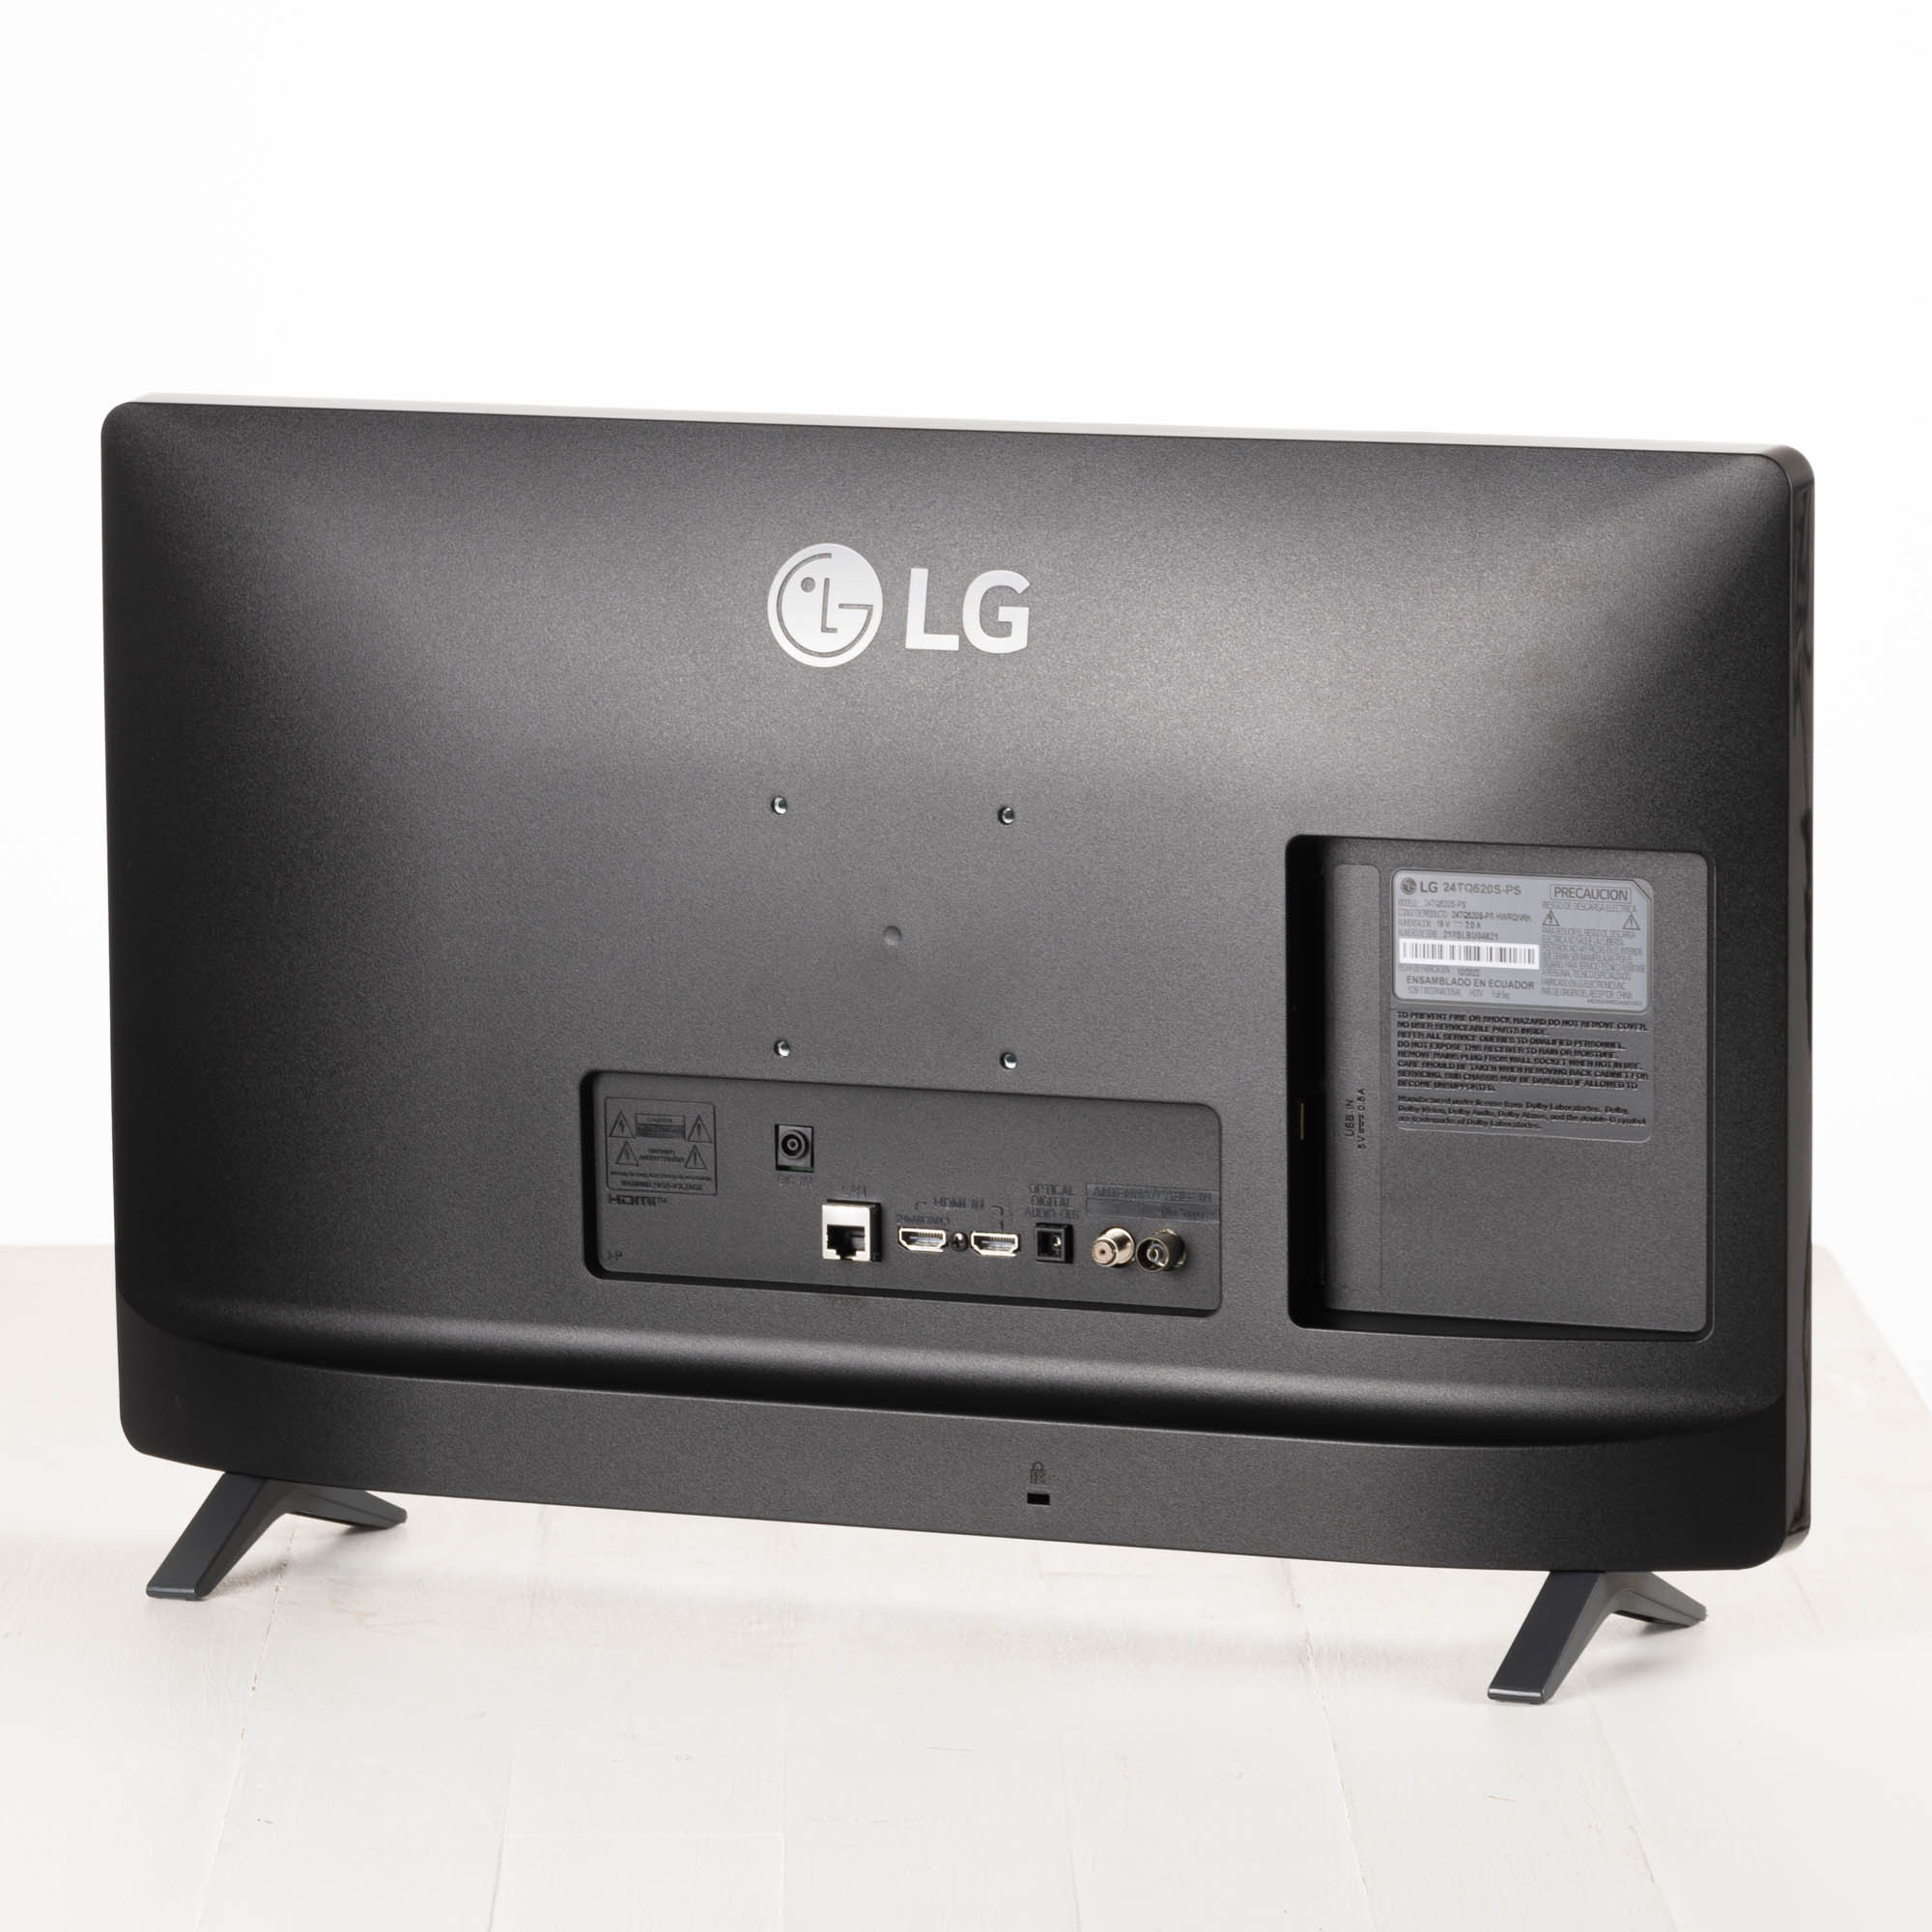 Monitor Smart TV LG 24TL520S-PS 24 LED HD Sintonizador